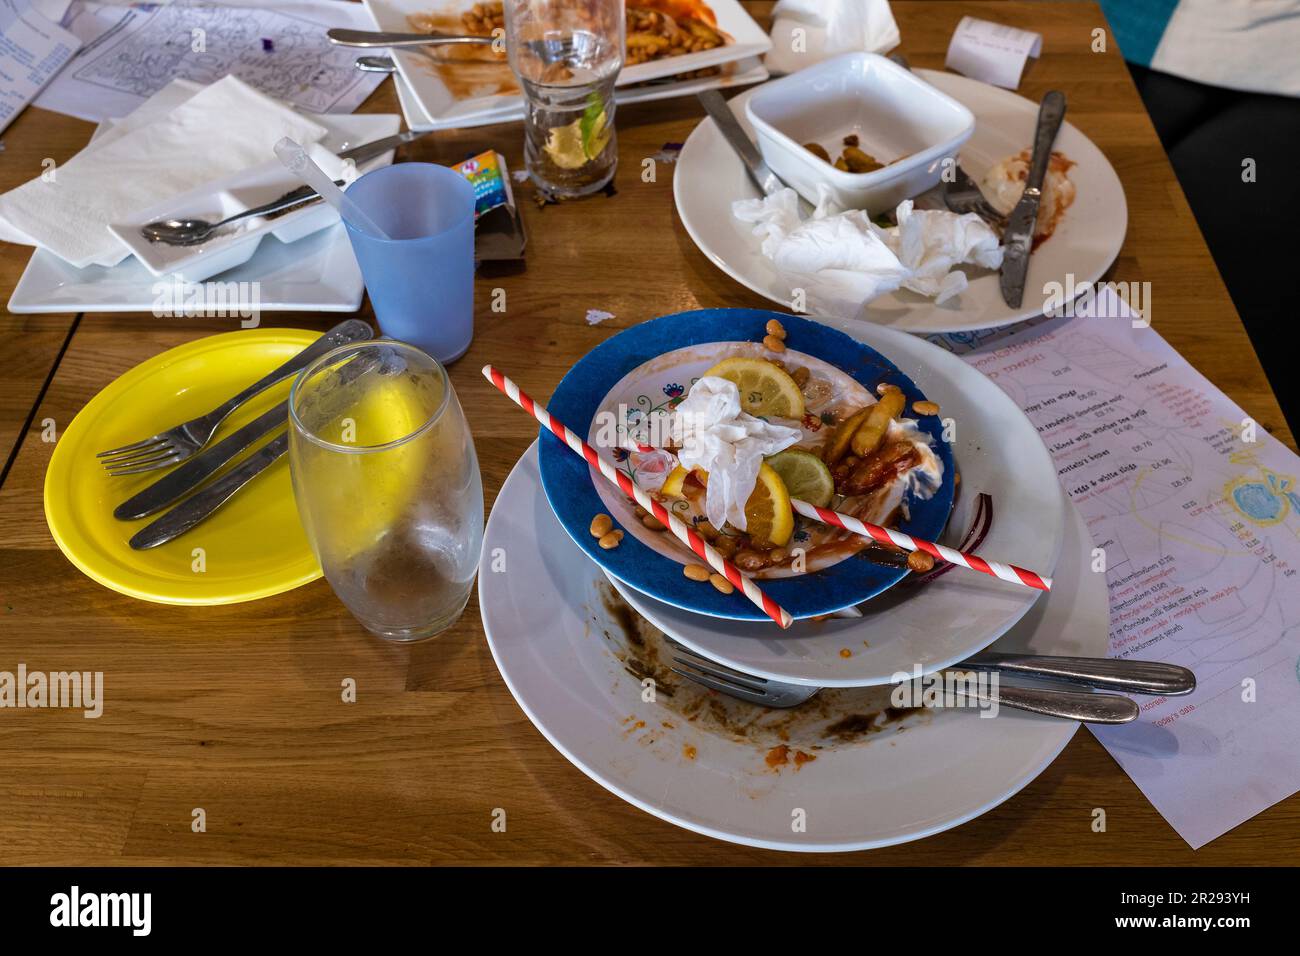 Ein Tisch in einem Restaurant mit dreckigem Geschirr nach dem Essen. Stockfoto